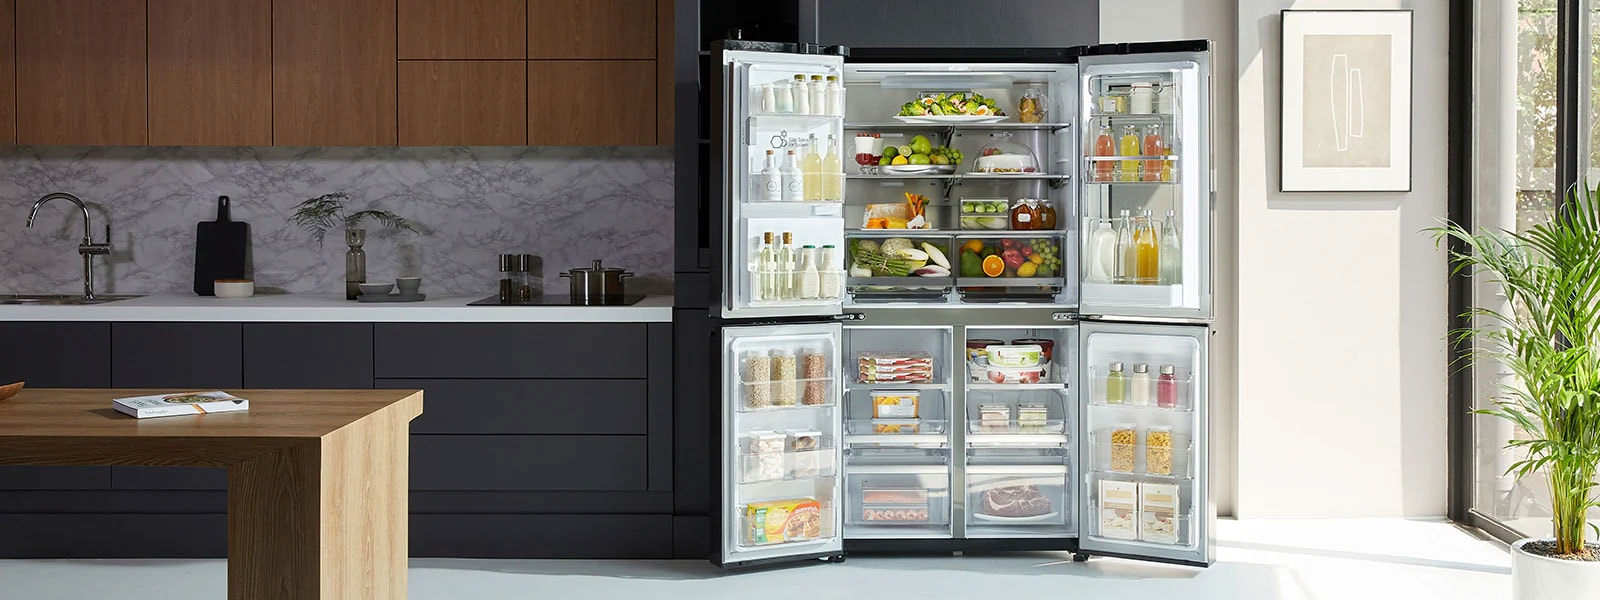 LG Multi-Door Kühlschränke1